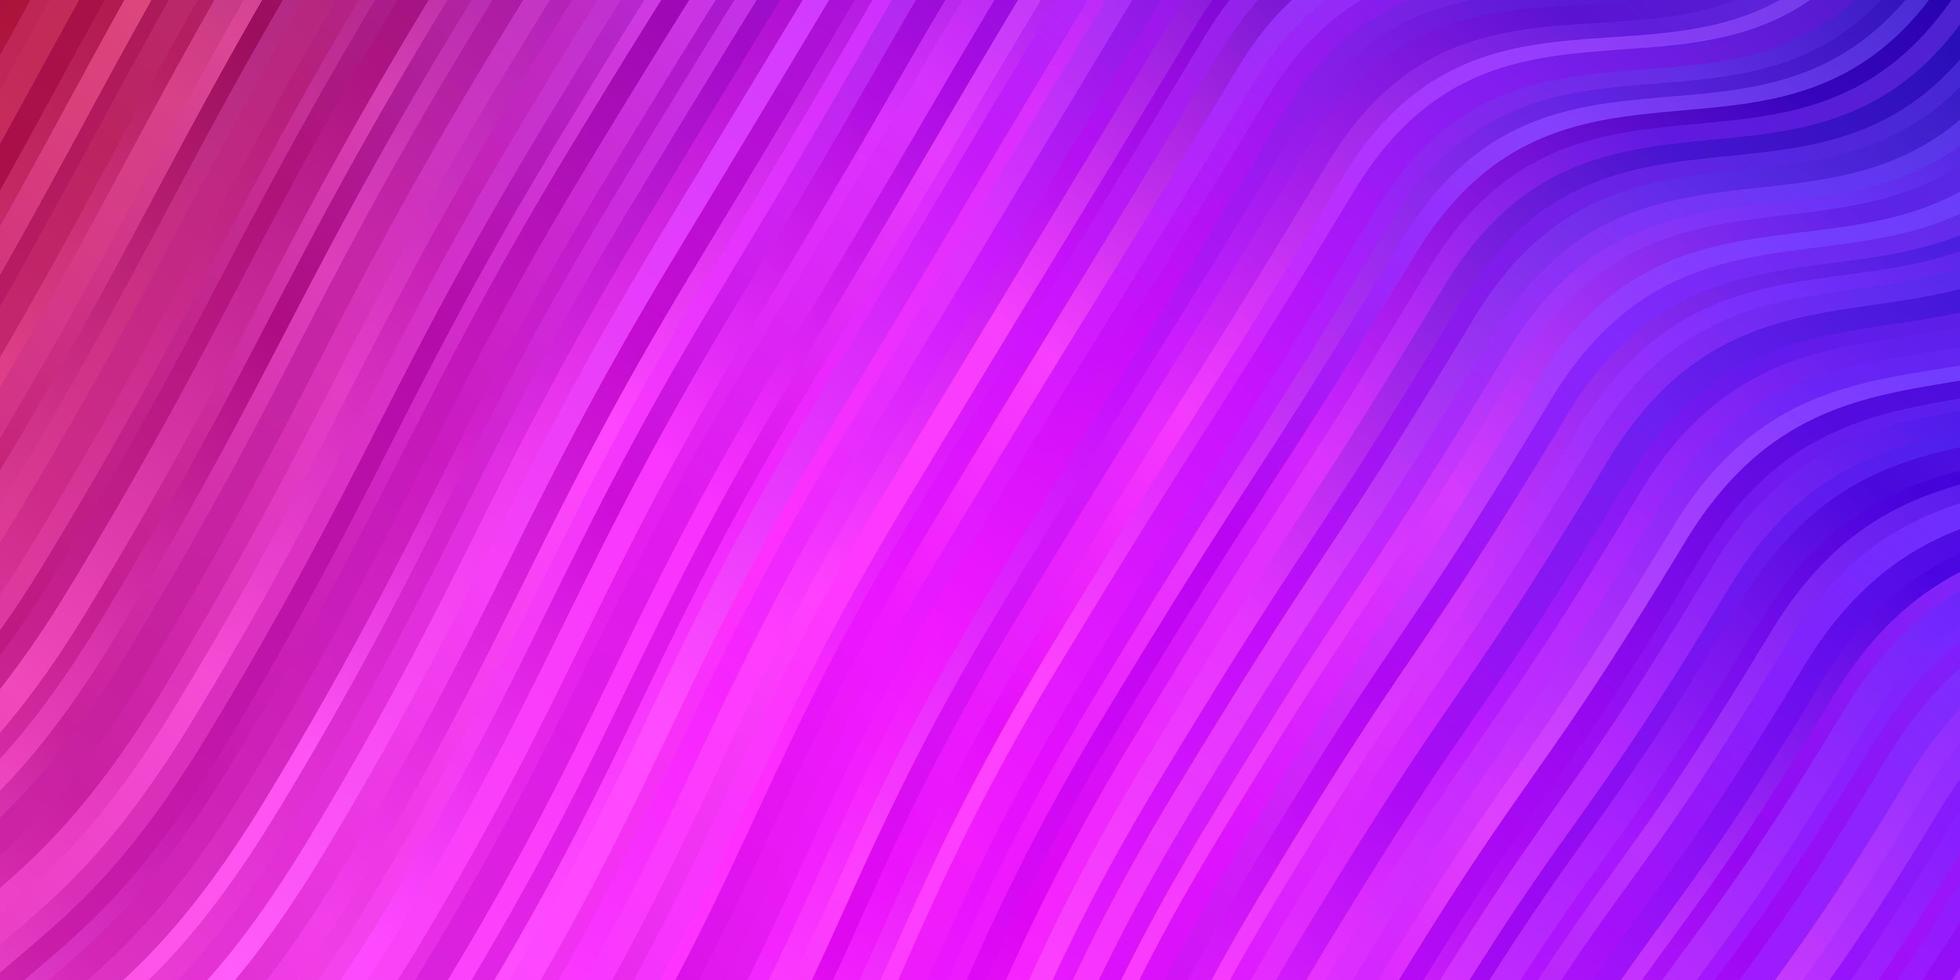 fond de vecteur violet clair, rose avec des lignes pliées.